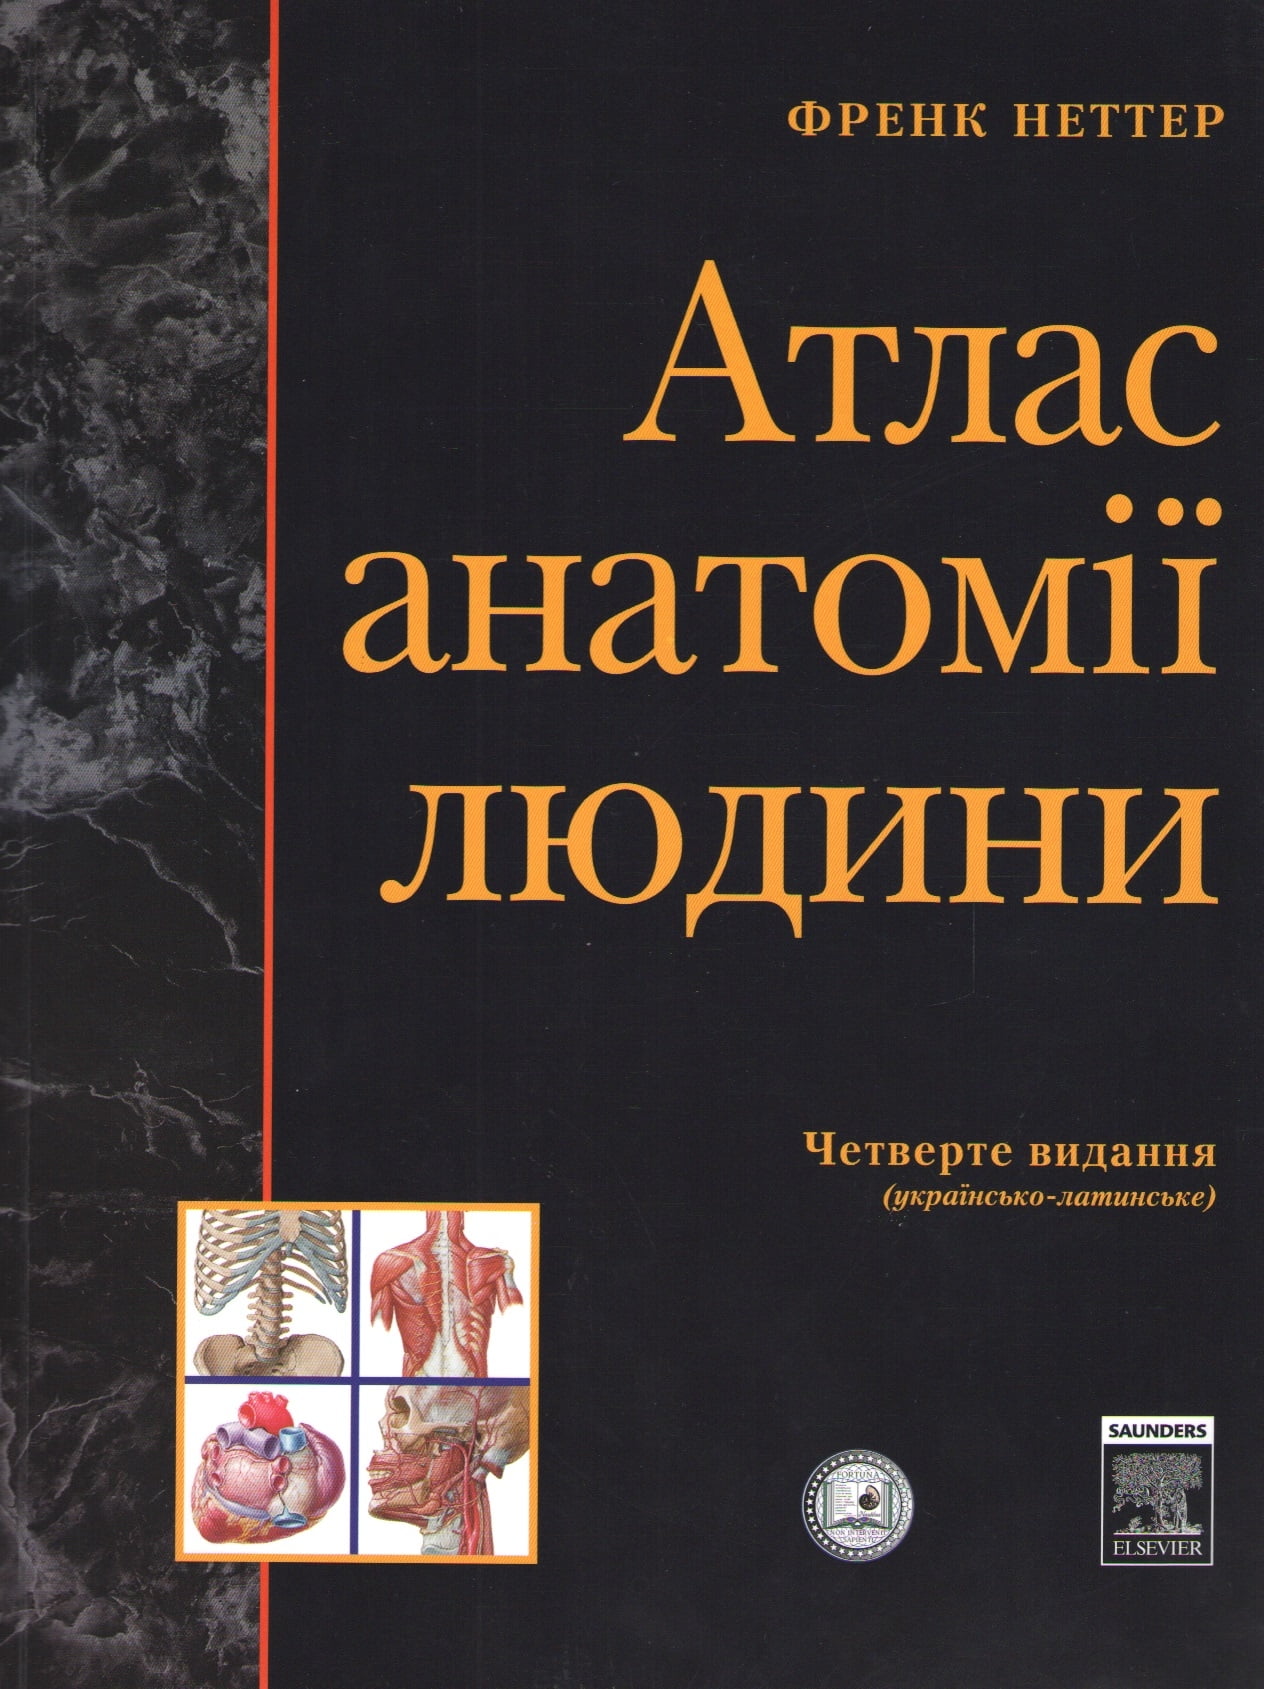 Атлас анатомії людини, Українсько-латинське 4-те видання. Френк Неттер (м'яка)